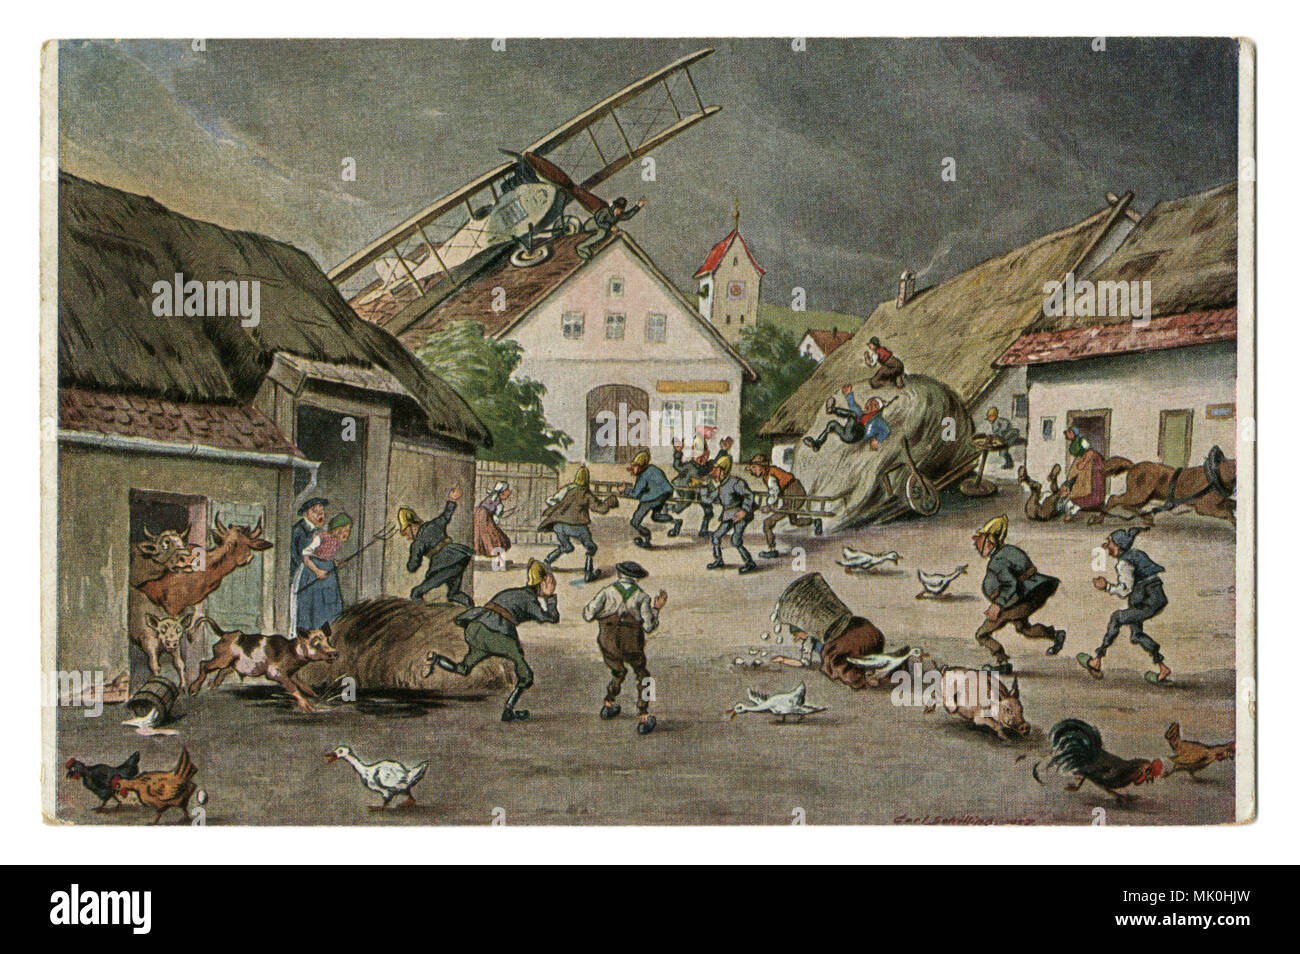 Une vieille carte postale Allemande humoristique : un biplan avion a atterri dans le village sur le toit d'une maison, la panique des villageois et des animaux domestiques. Le début de l'aviation. Banque D'Images